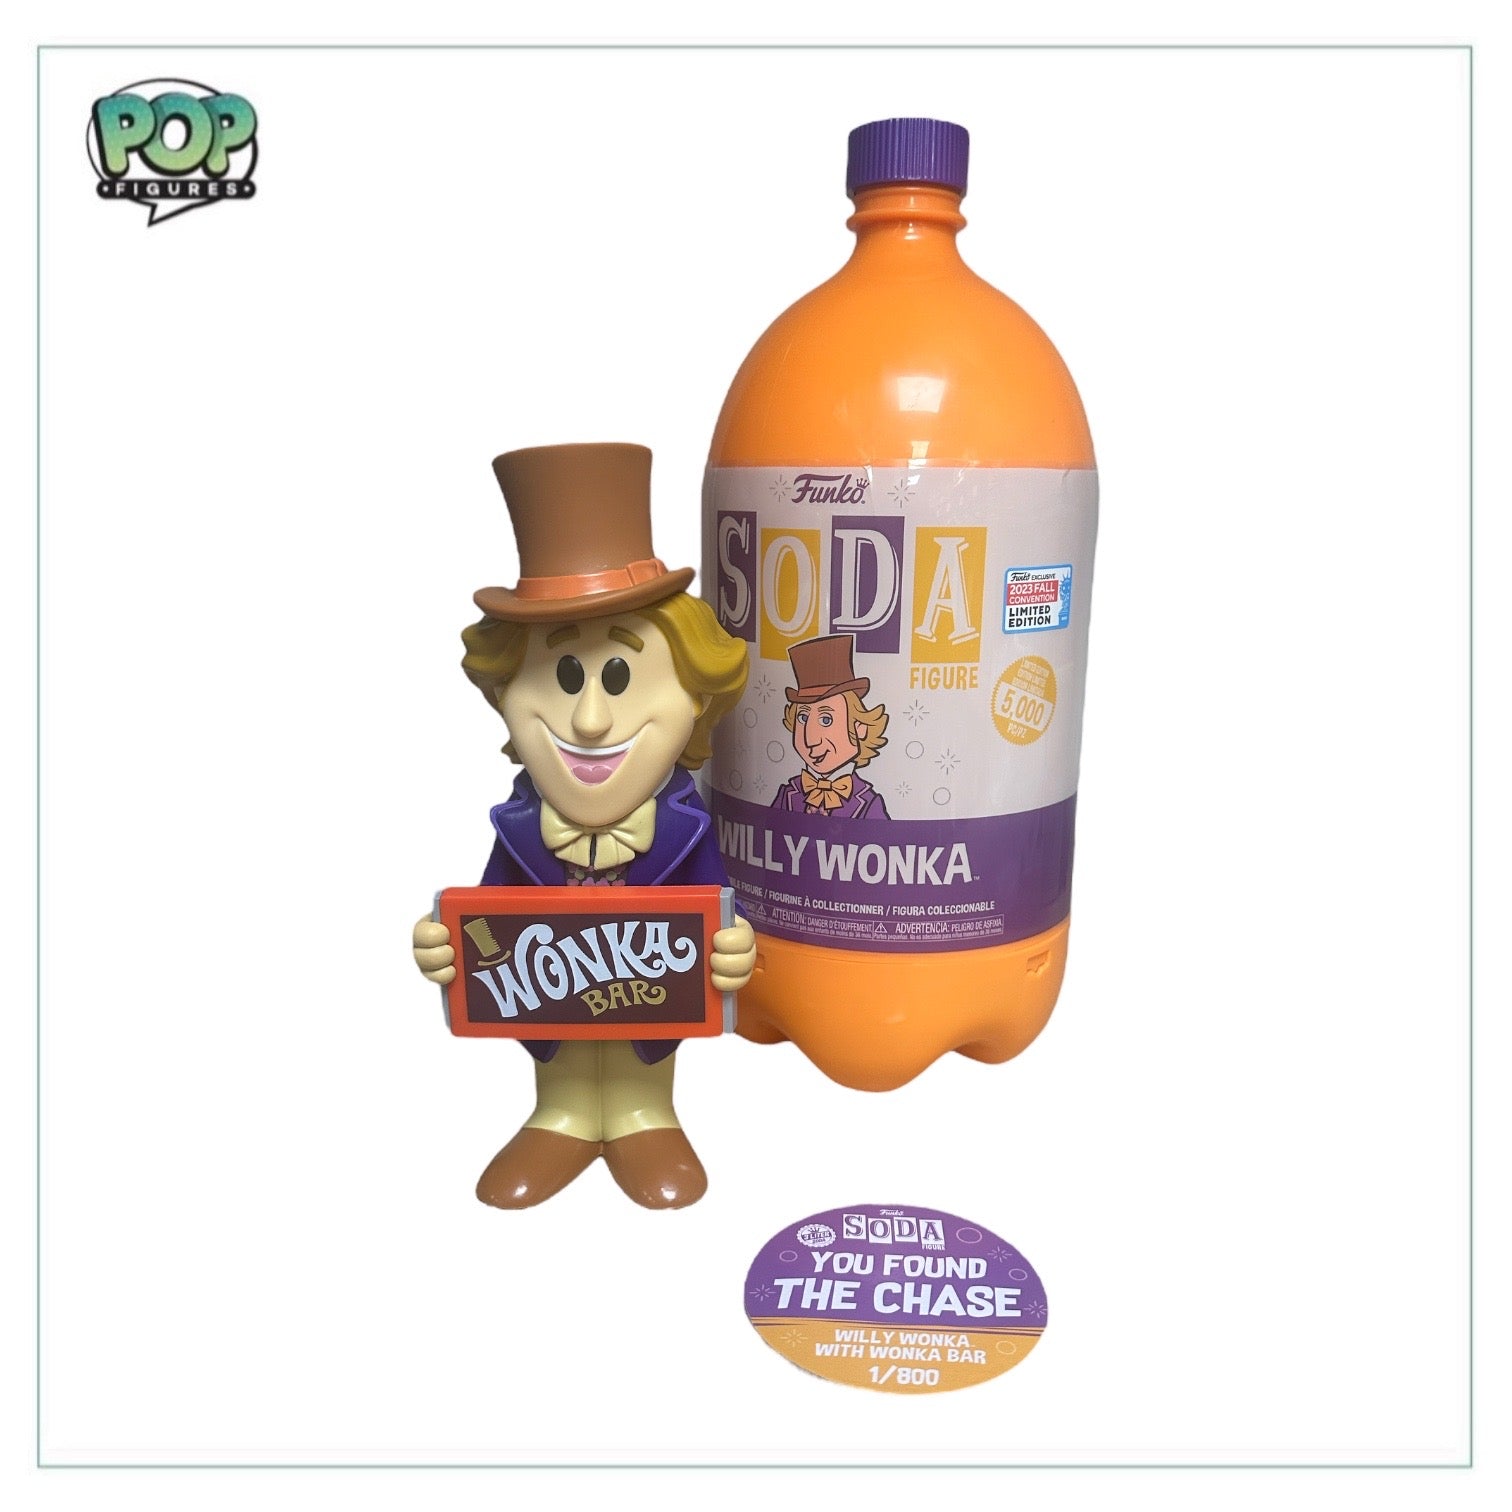 Buy Vinyl SODA 3 Liter Willy Wonka at Funko.